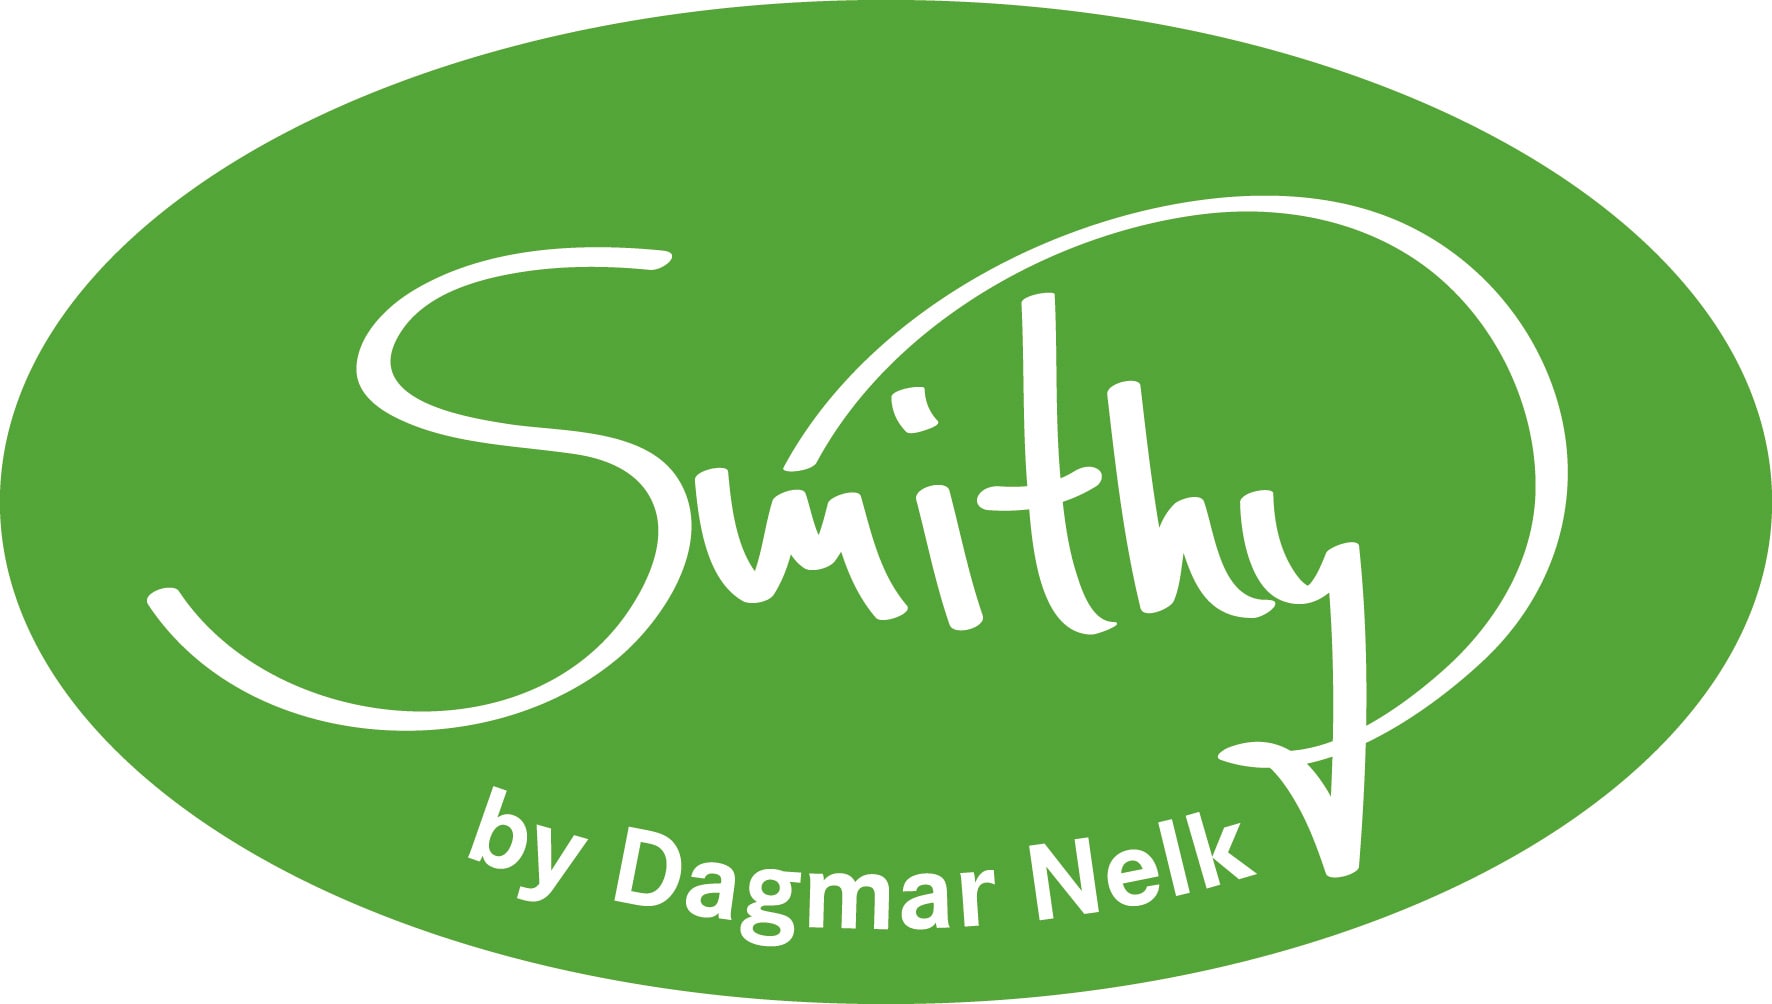 Smithy by Dagmar Nelk-logo